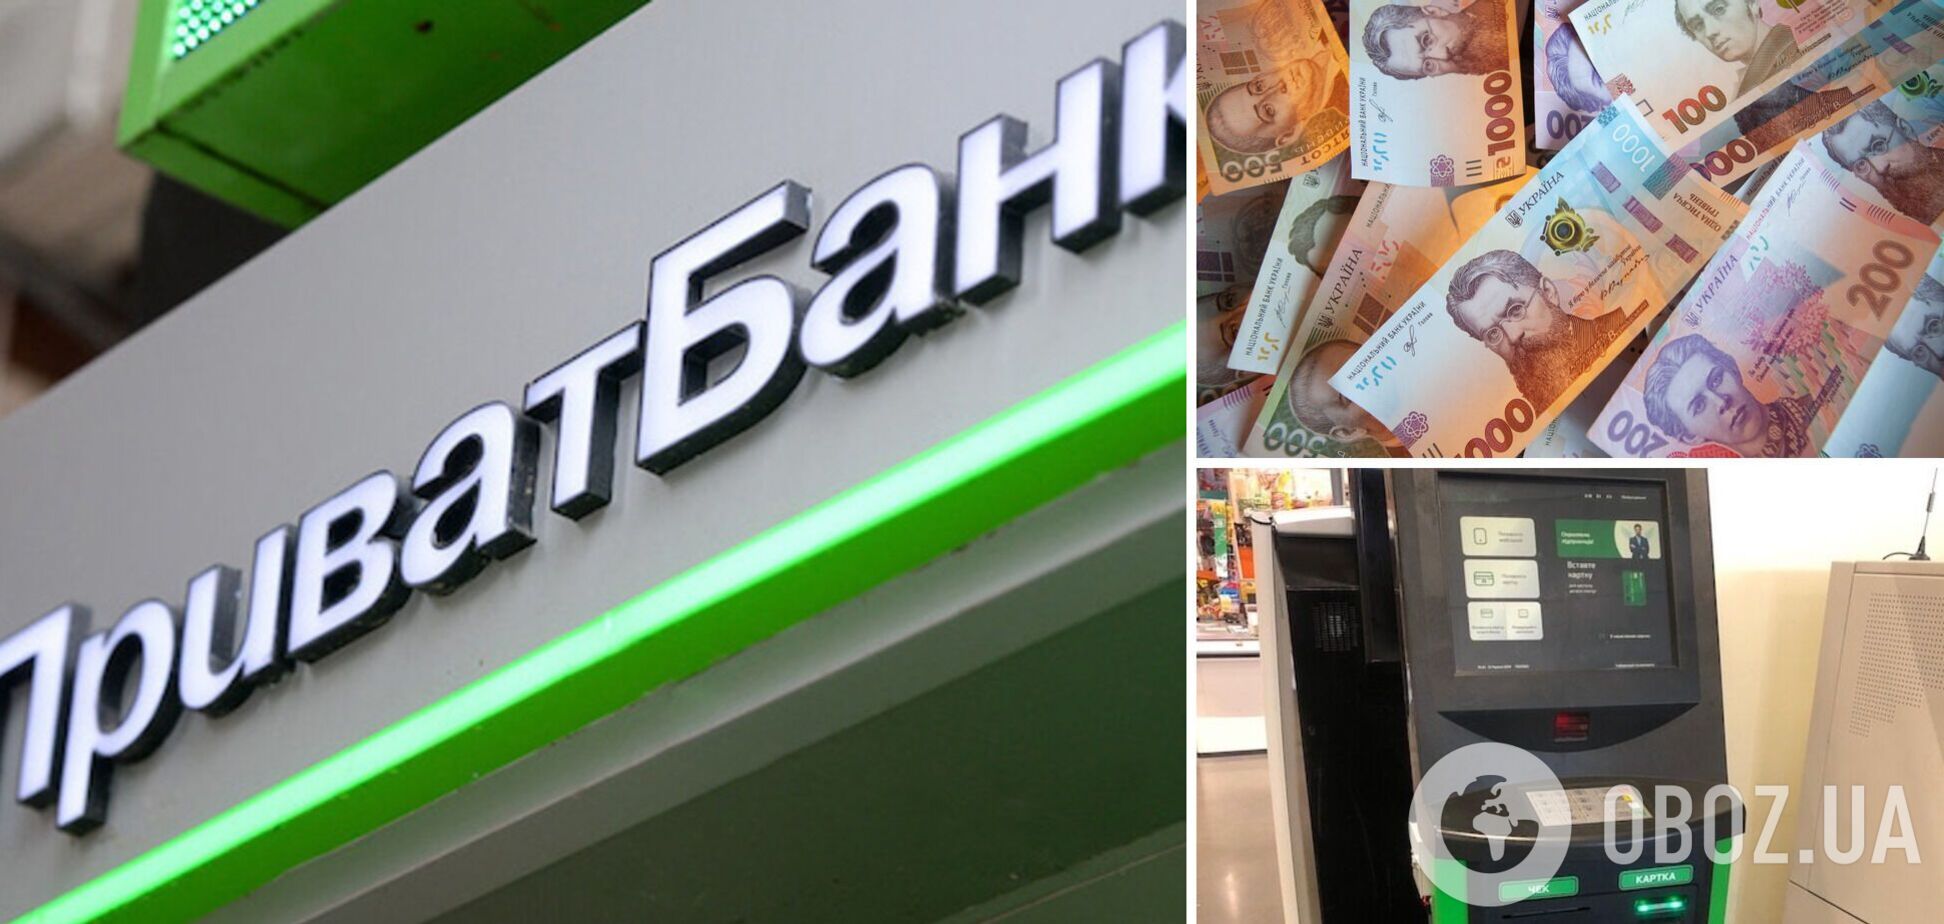 Терминал ПриватБанка забрал у украинца деньги и не пополнил карту